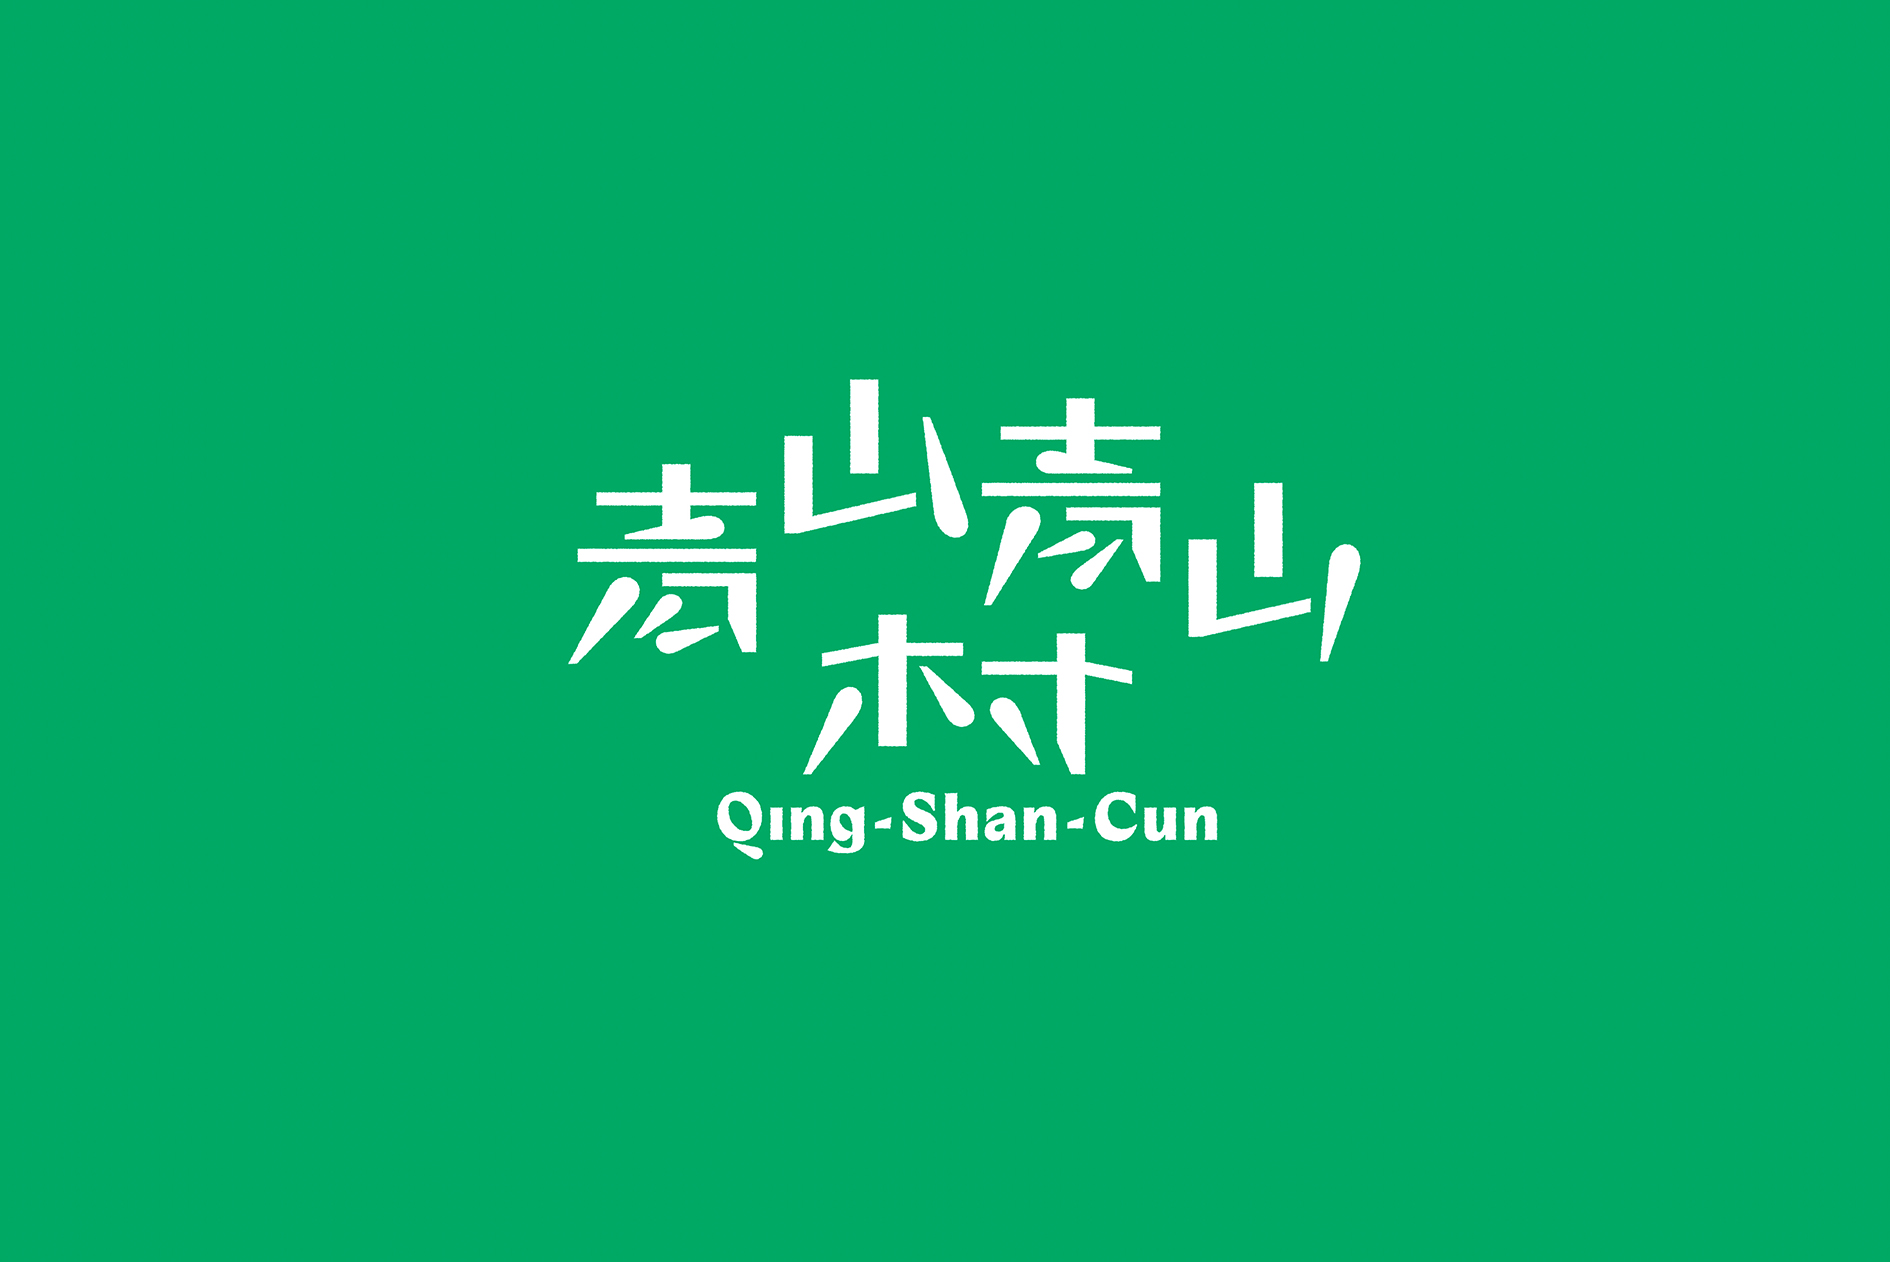 Qing Shan Cun - Quinsay